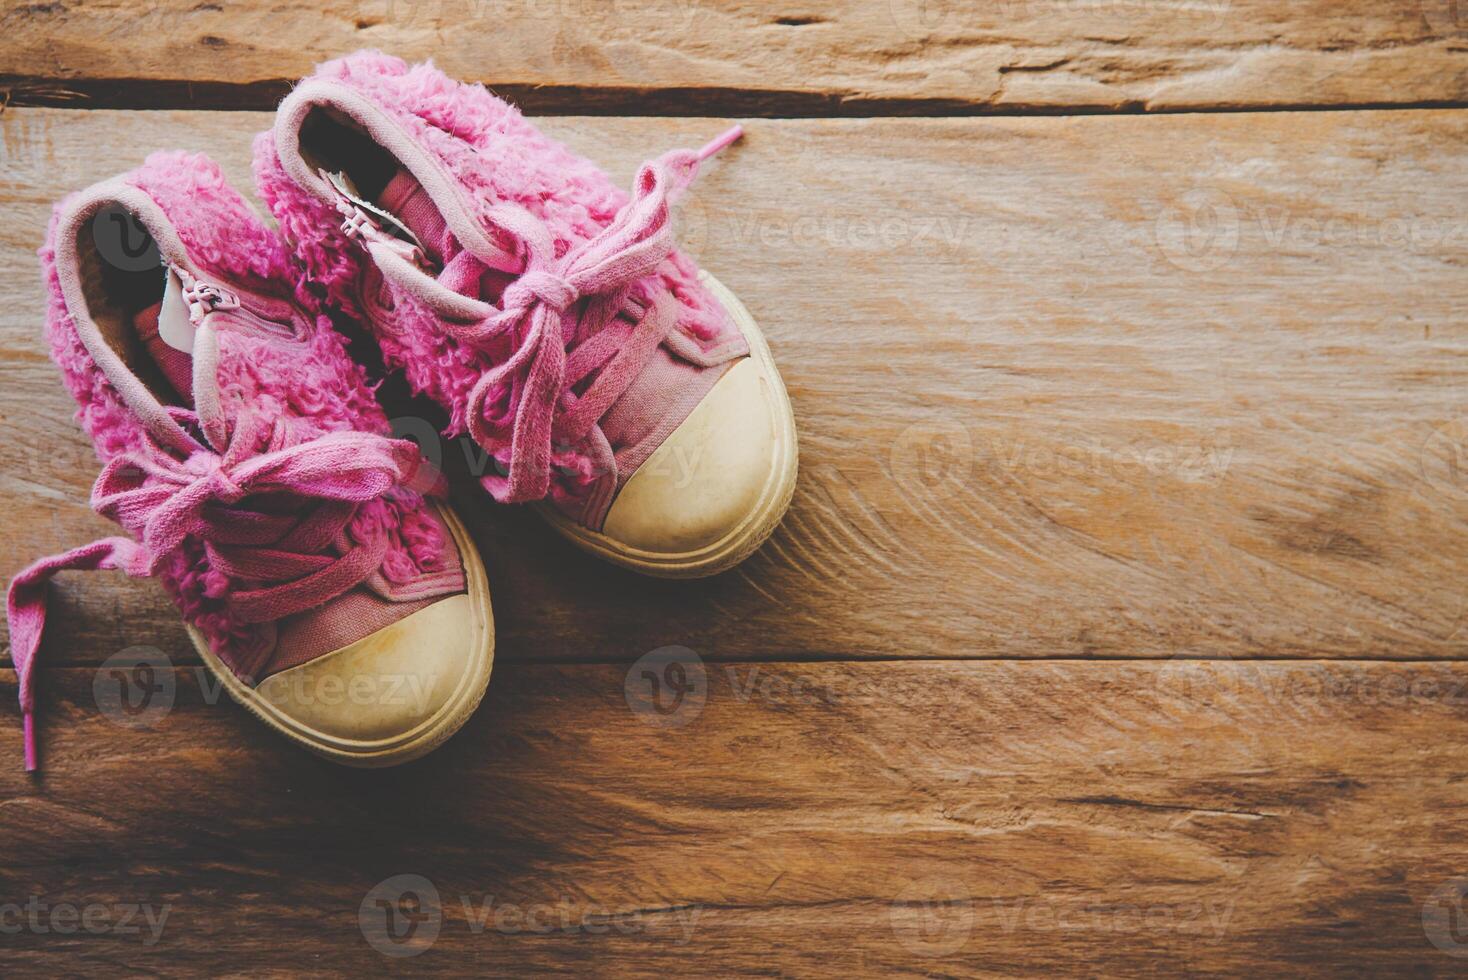 Schuhe zum Kinder auf hölzern Fußboden foto